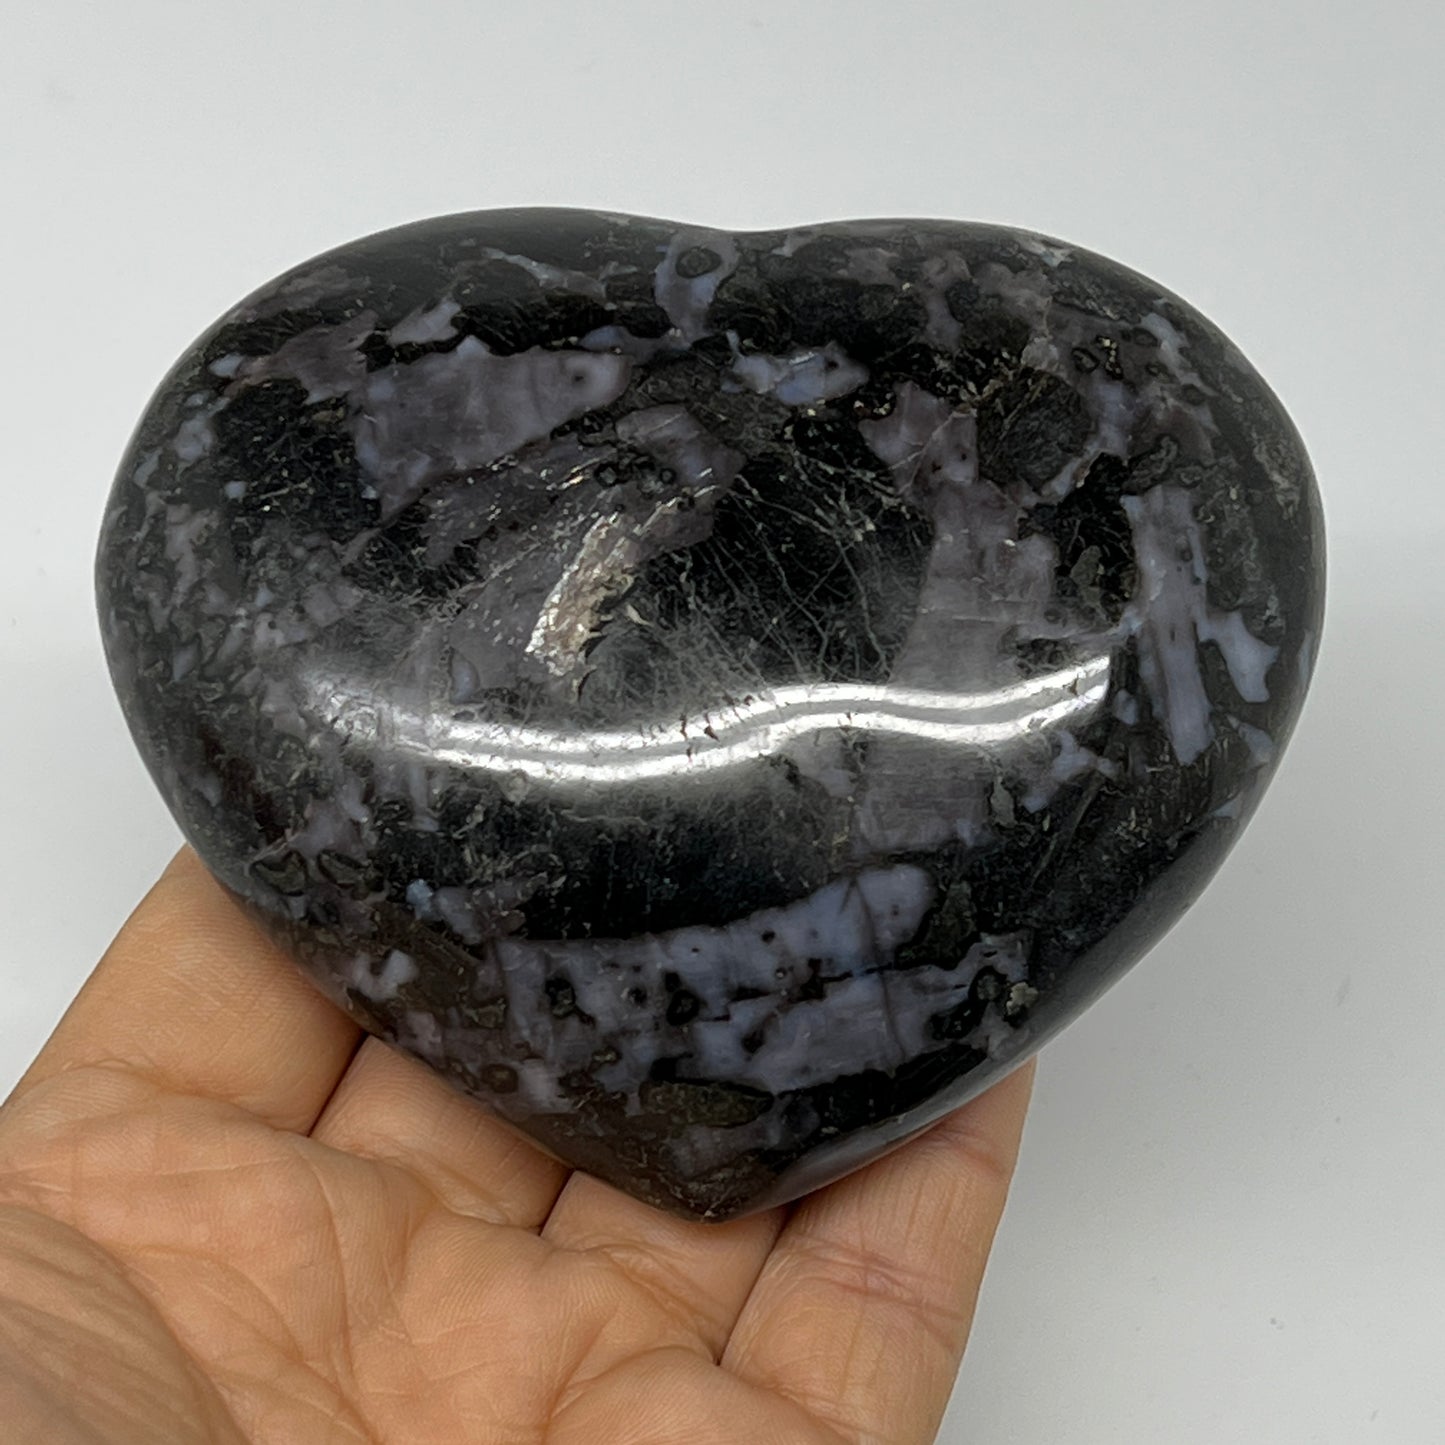 386.2g,3.2"x3.7"x1.3" Indigo Gabro Merlinite Heart Gemstone @Madagascar,B19917